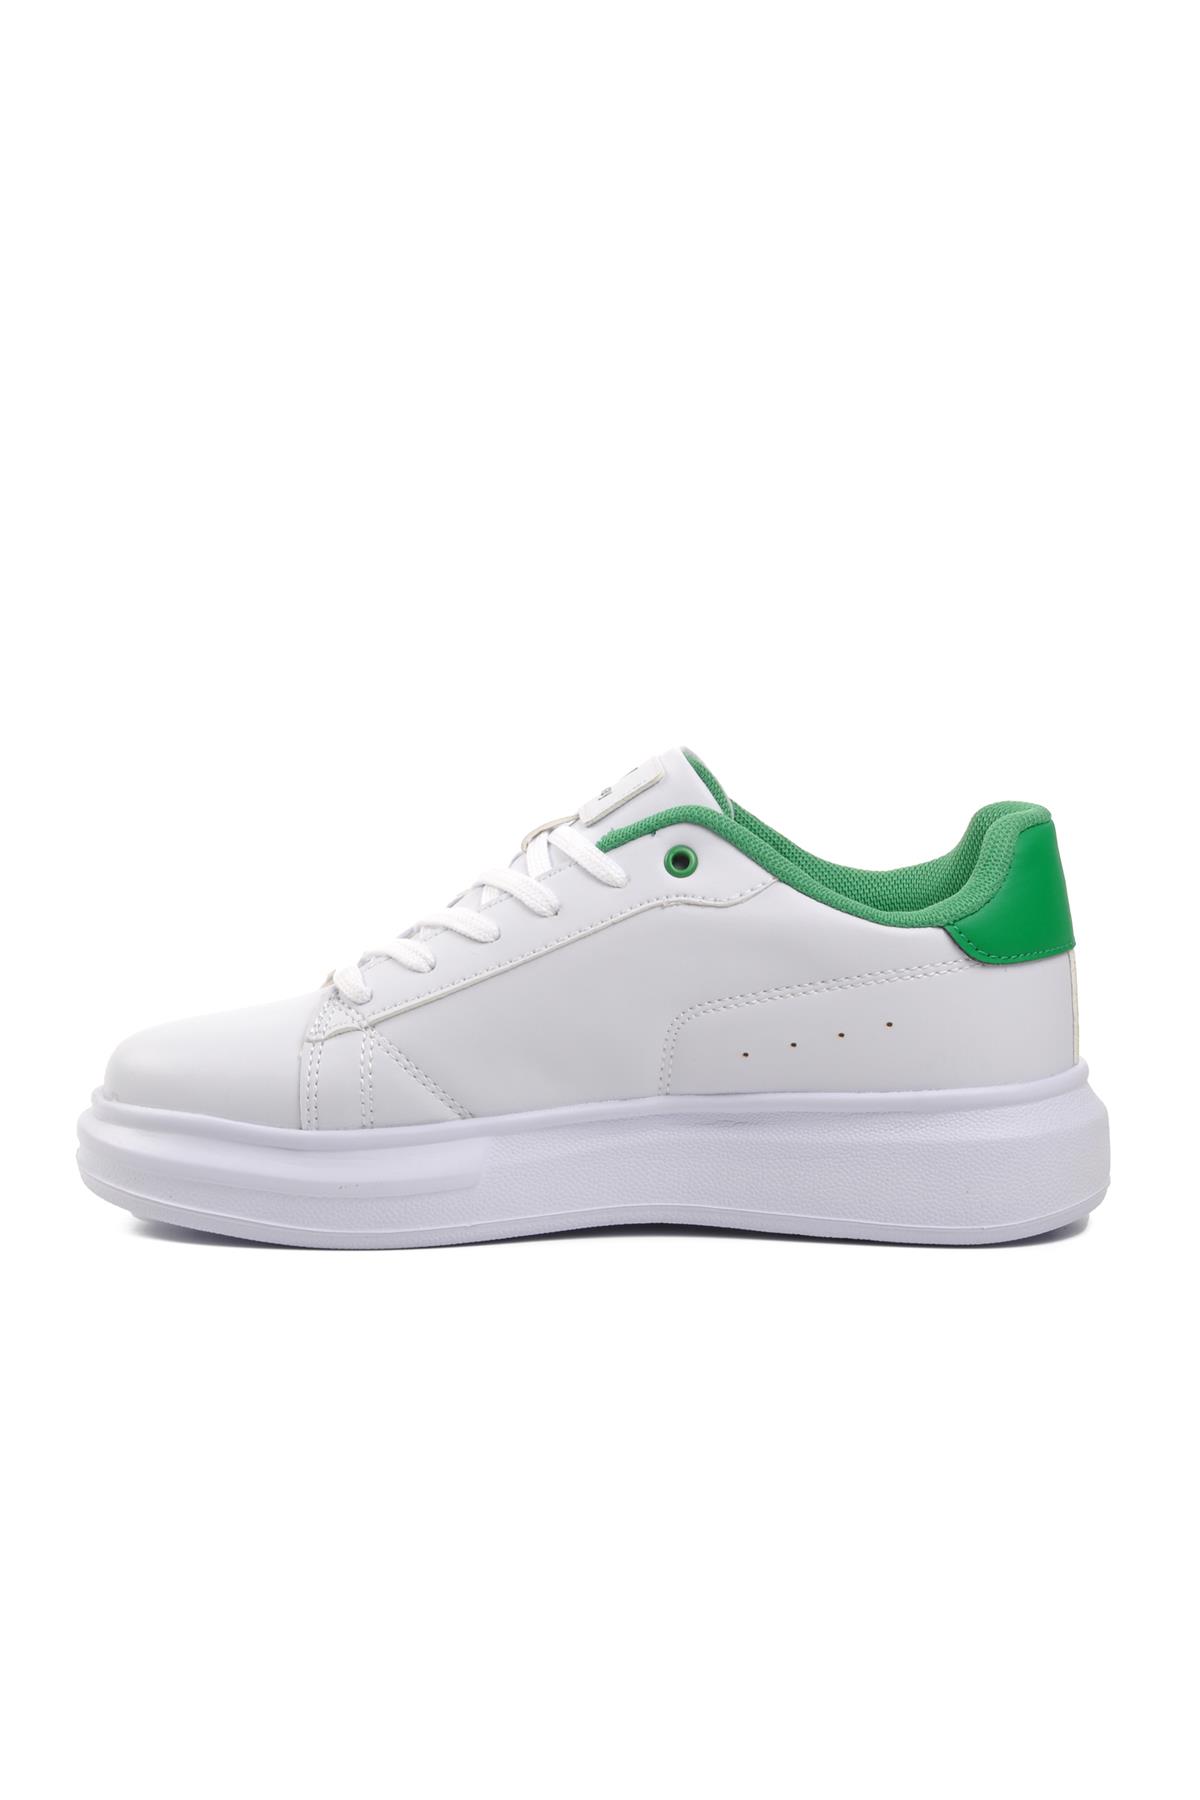 Walkway Nadia Beyaz-Yeşil Kadın Sneaker Walkway Kadın Spor Ayakkabı